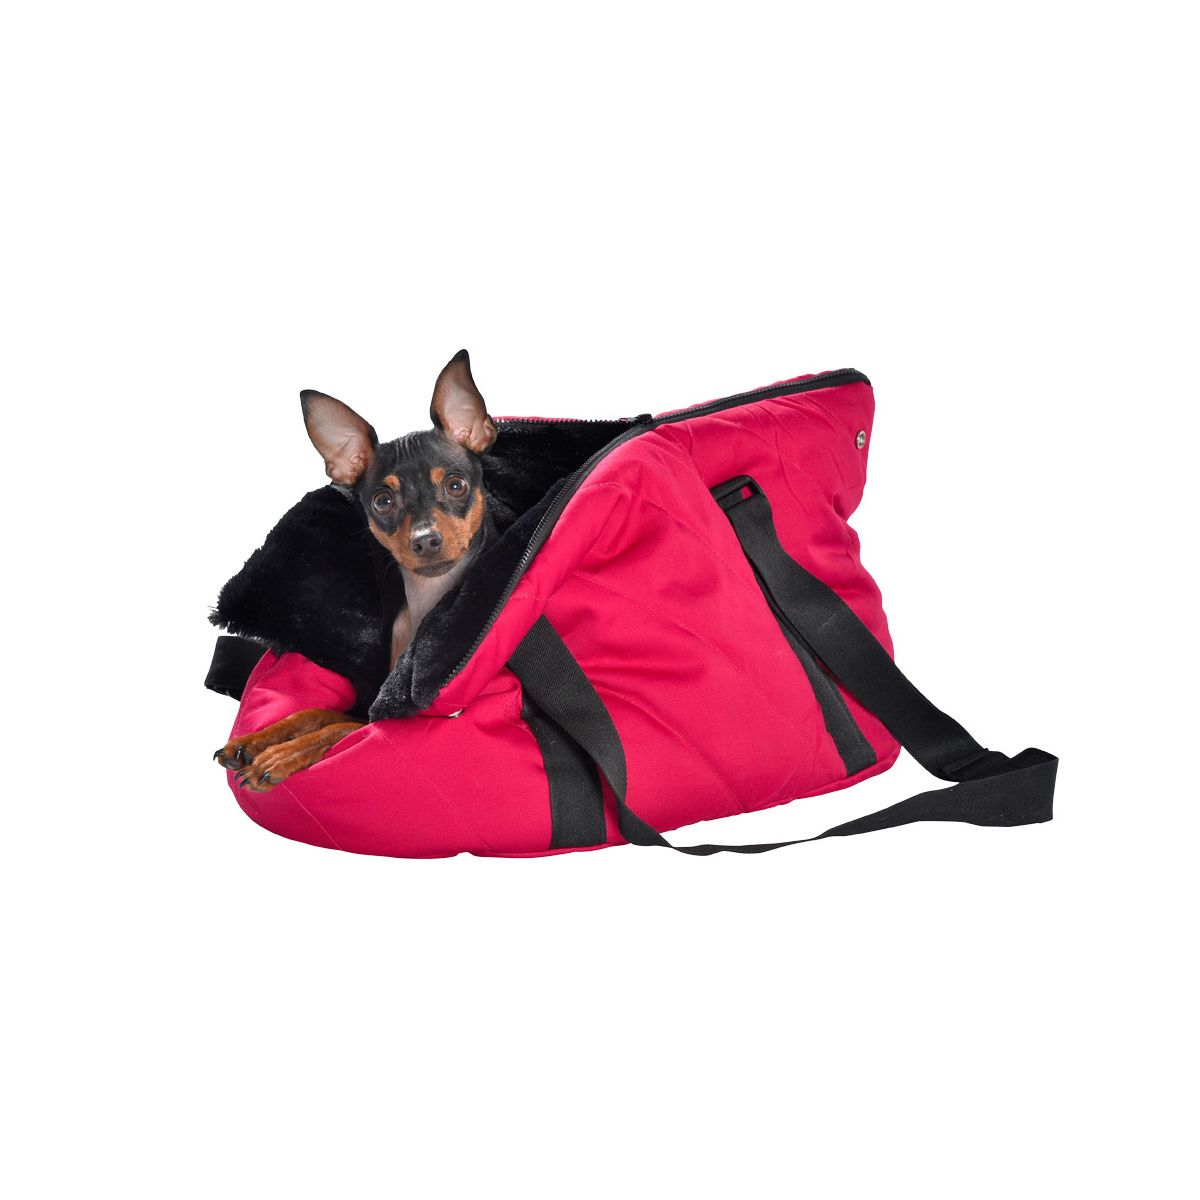 SAC MOELLEUX - Transport - Bobby - Accessoires pour chien et chat -  Colliers, manteaux, pulls